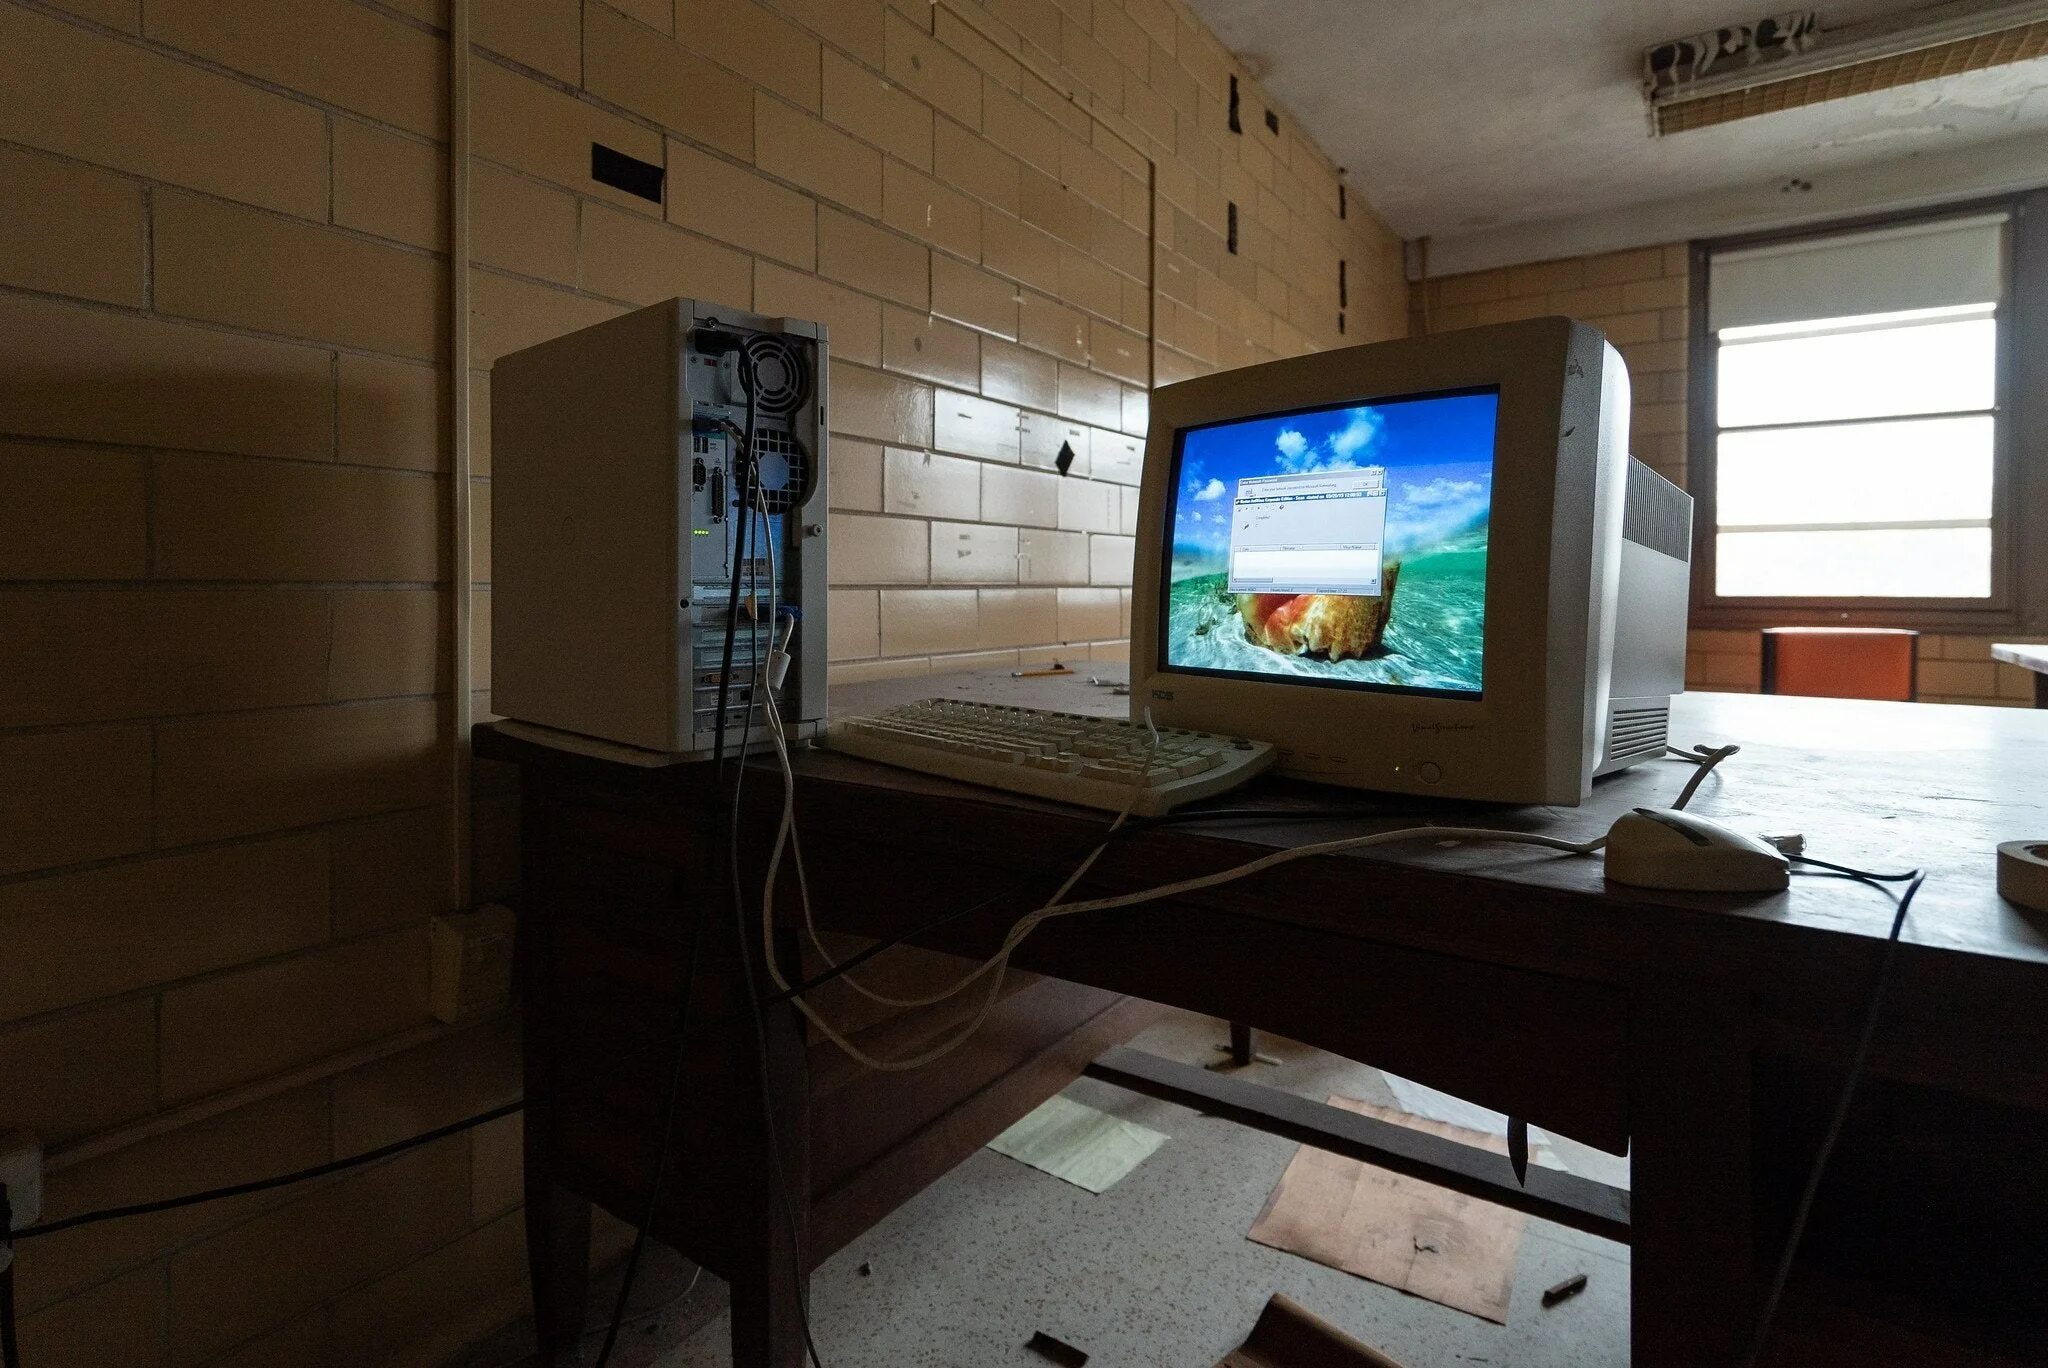 Заброшенный компьютер. Старый компьютер в комнате. Старый компьютер в команте. Старая комната и комп.